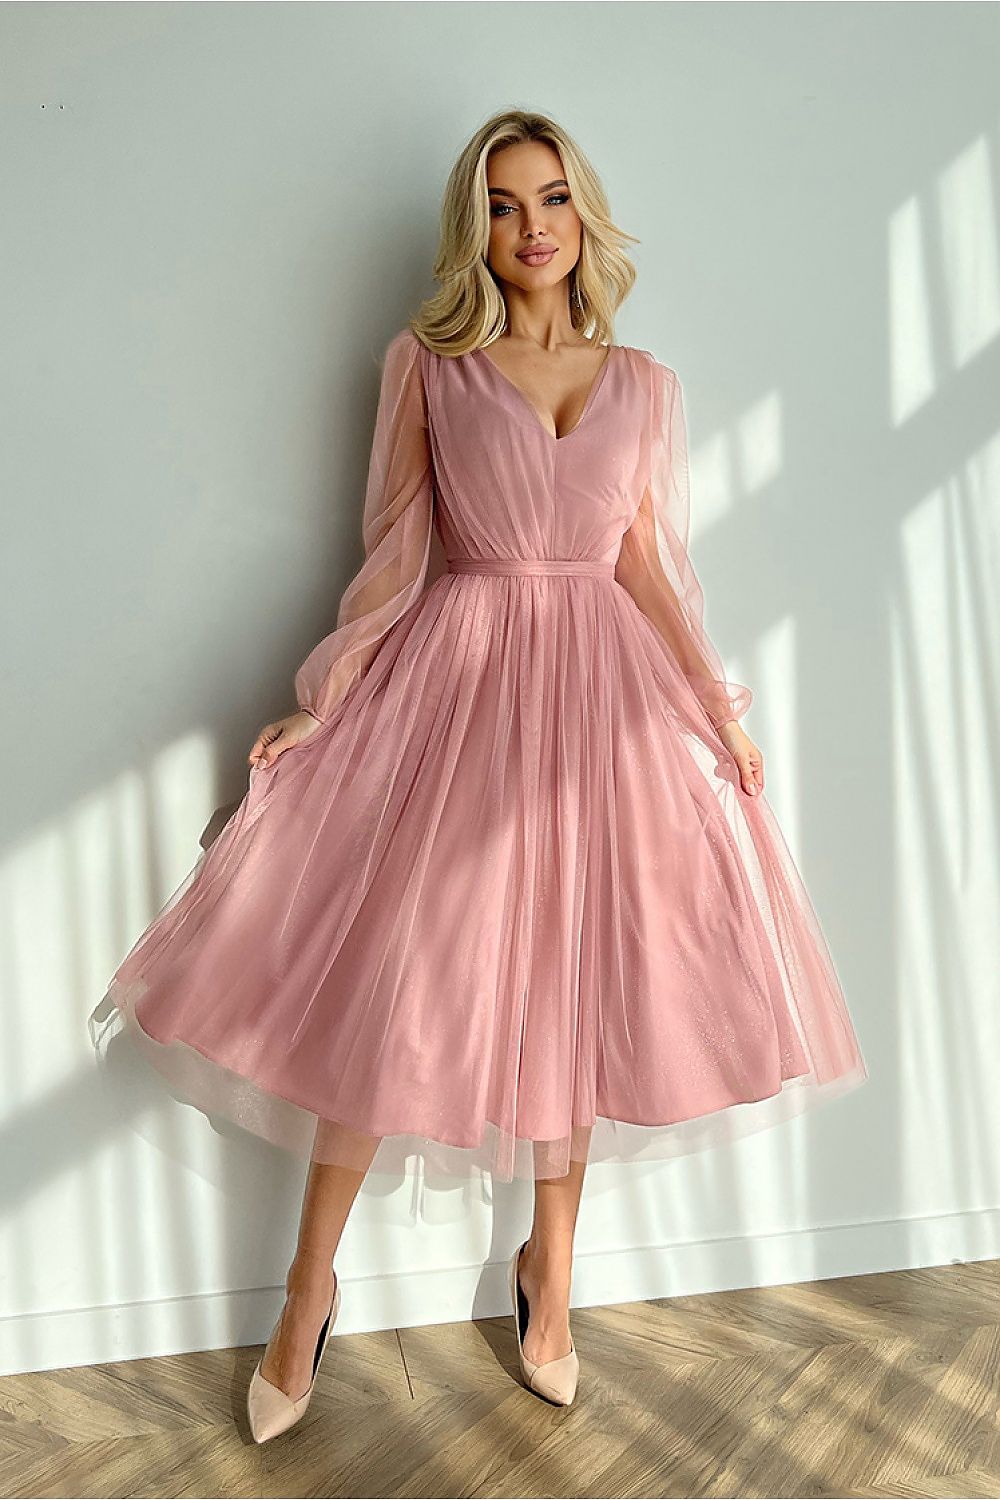 Βραδινό Φόρεμα Με Ελαφρώς Φουντωτή Φούστα Σε Βρώμικο Ροζ